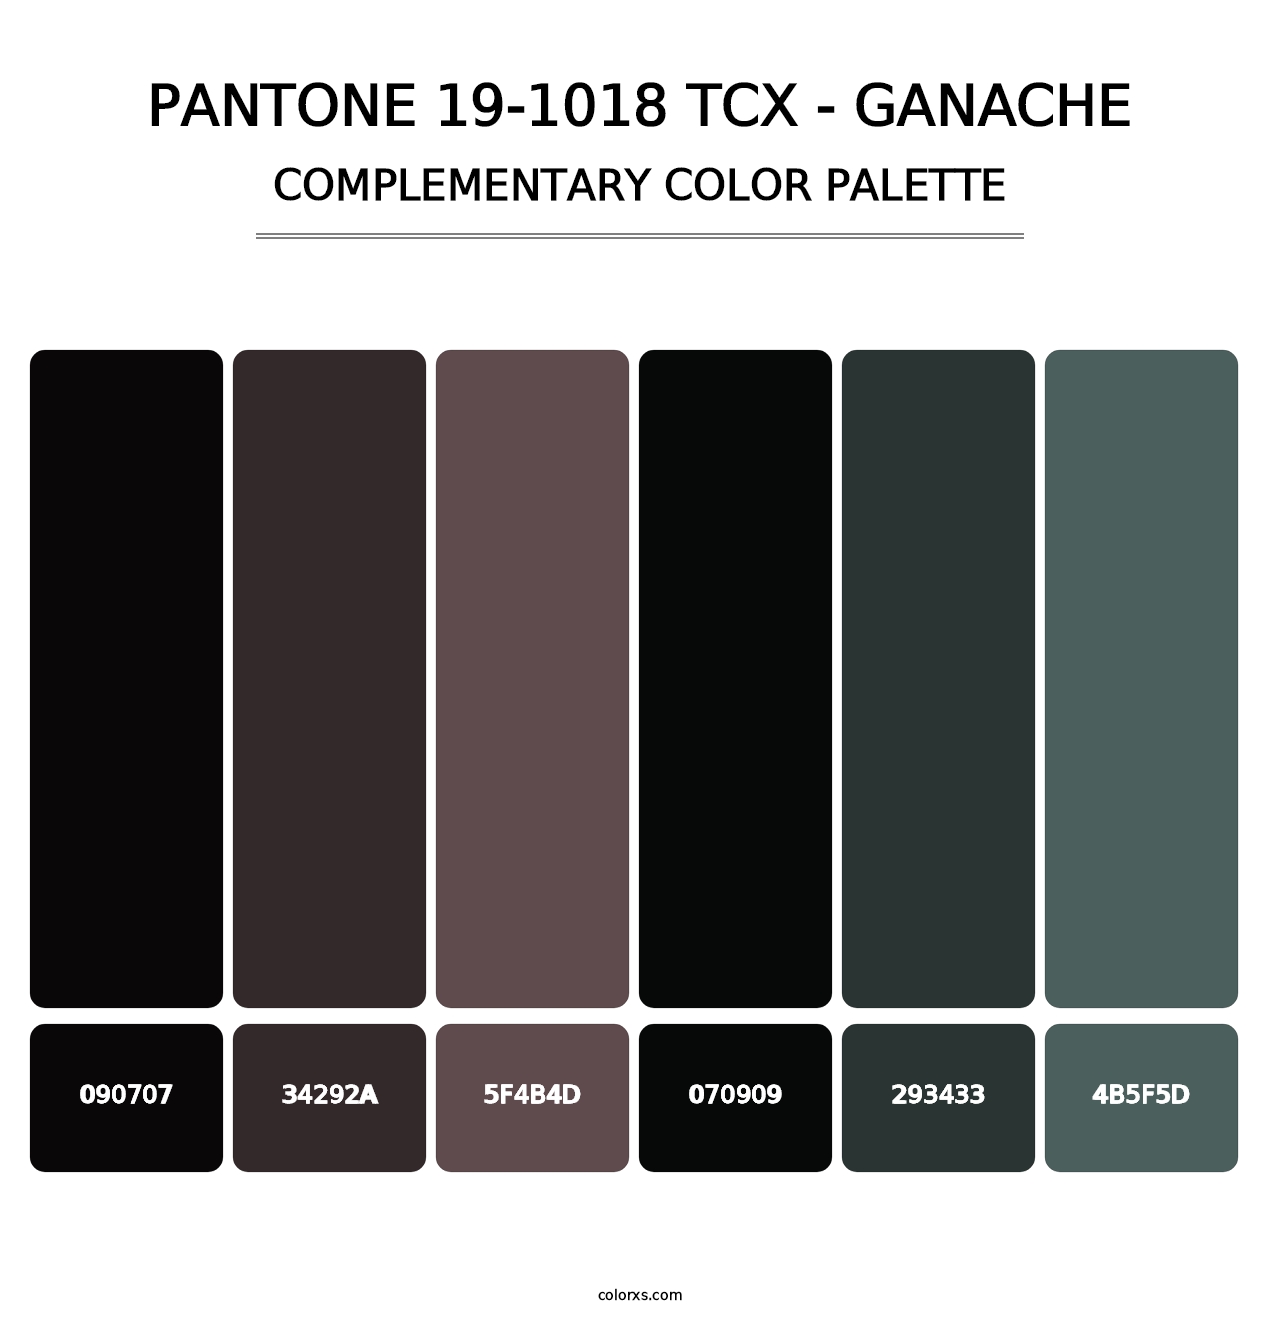 PANTONE 19-1018 TCX - Ganache - Complementary Color Palette